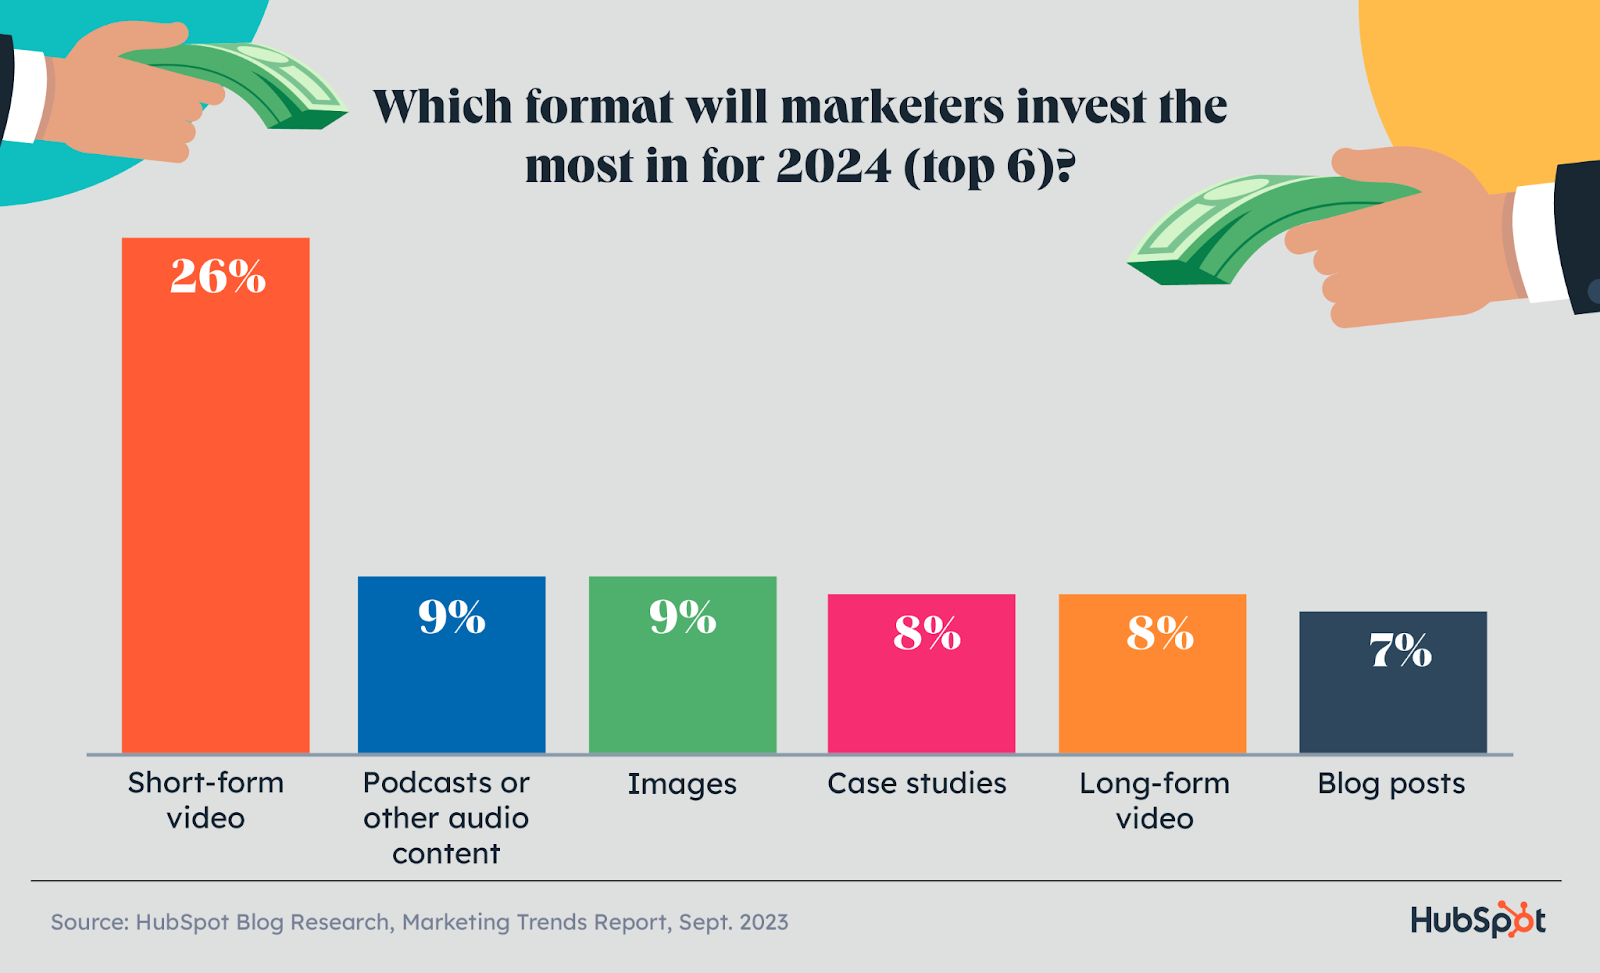 سيحصل الفيديو القصير على أكبر قدر من الاستثمار التسويقي مقارنة بأنواع المحتوى الأخرى في عام 2024